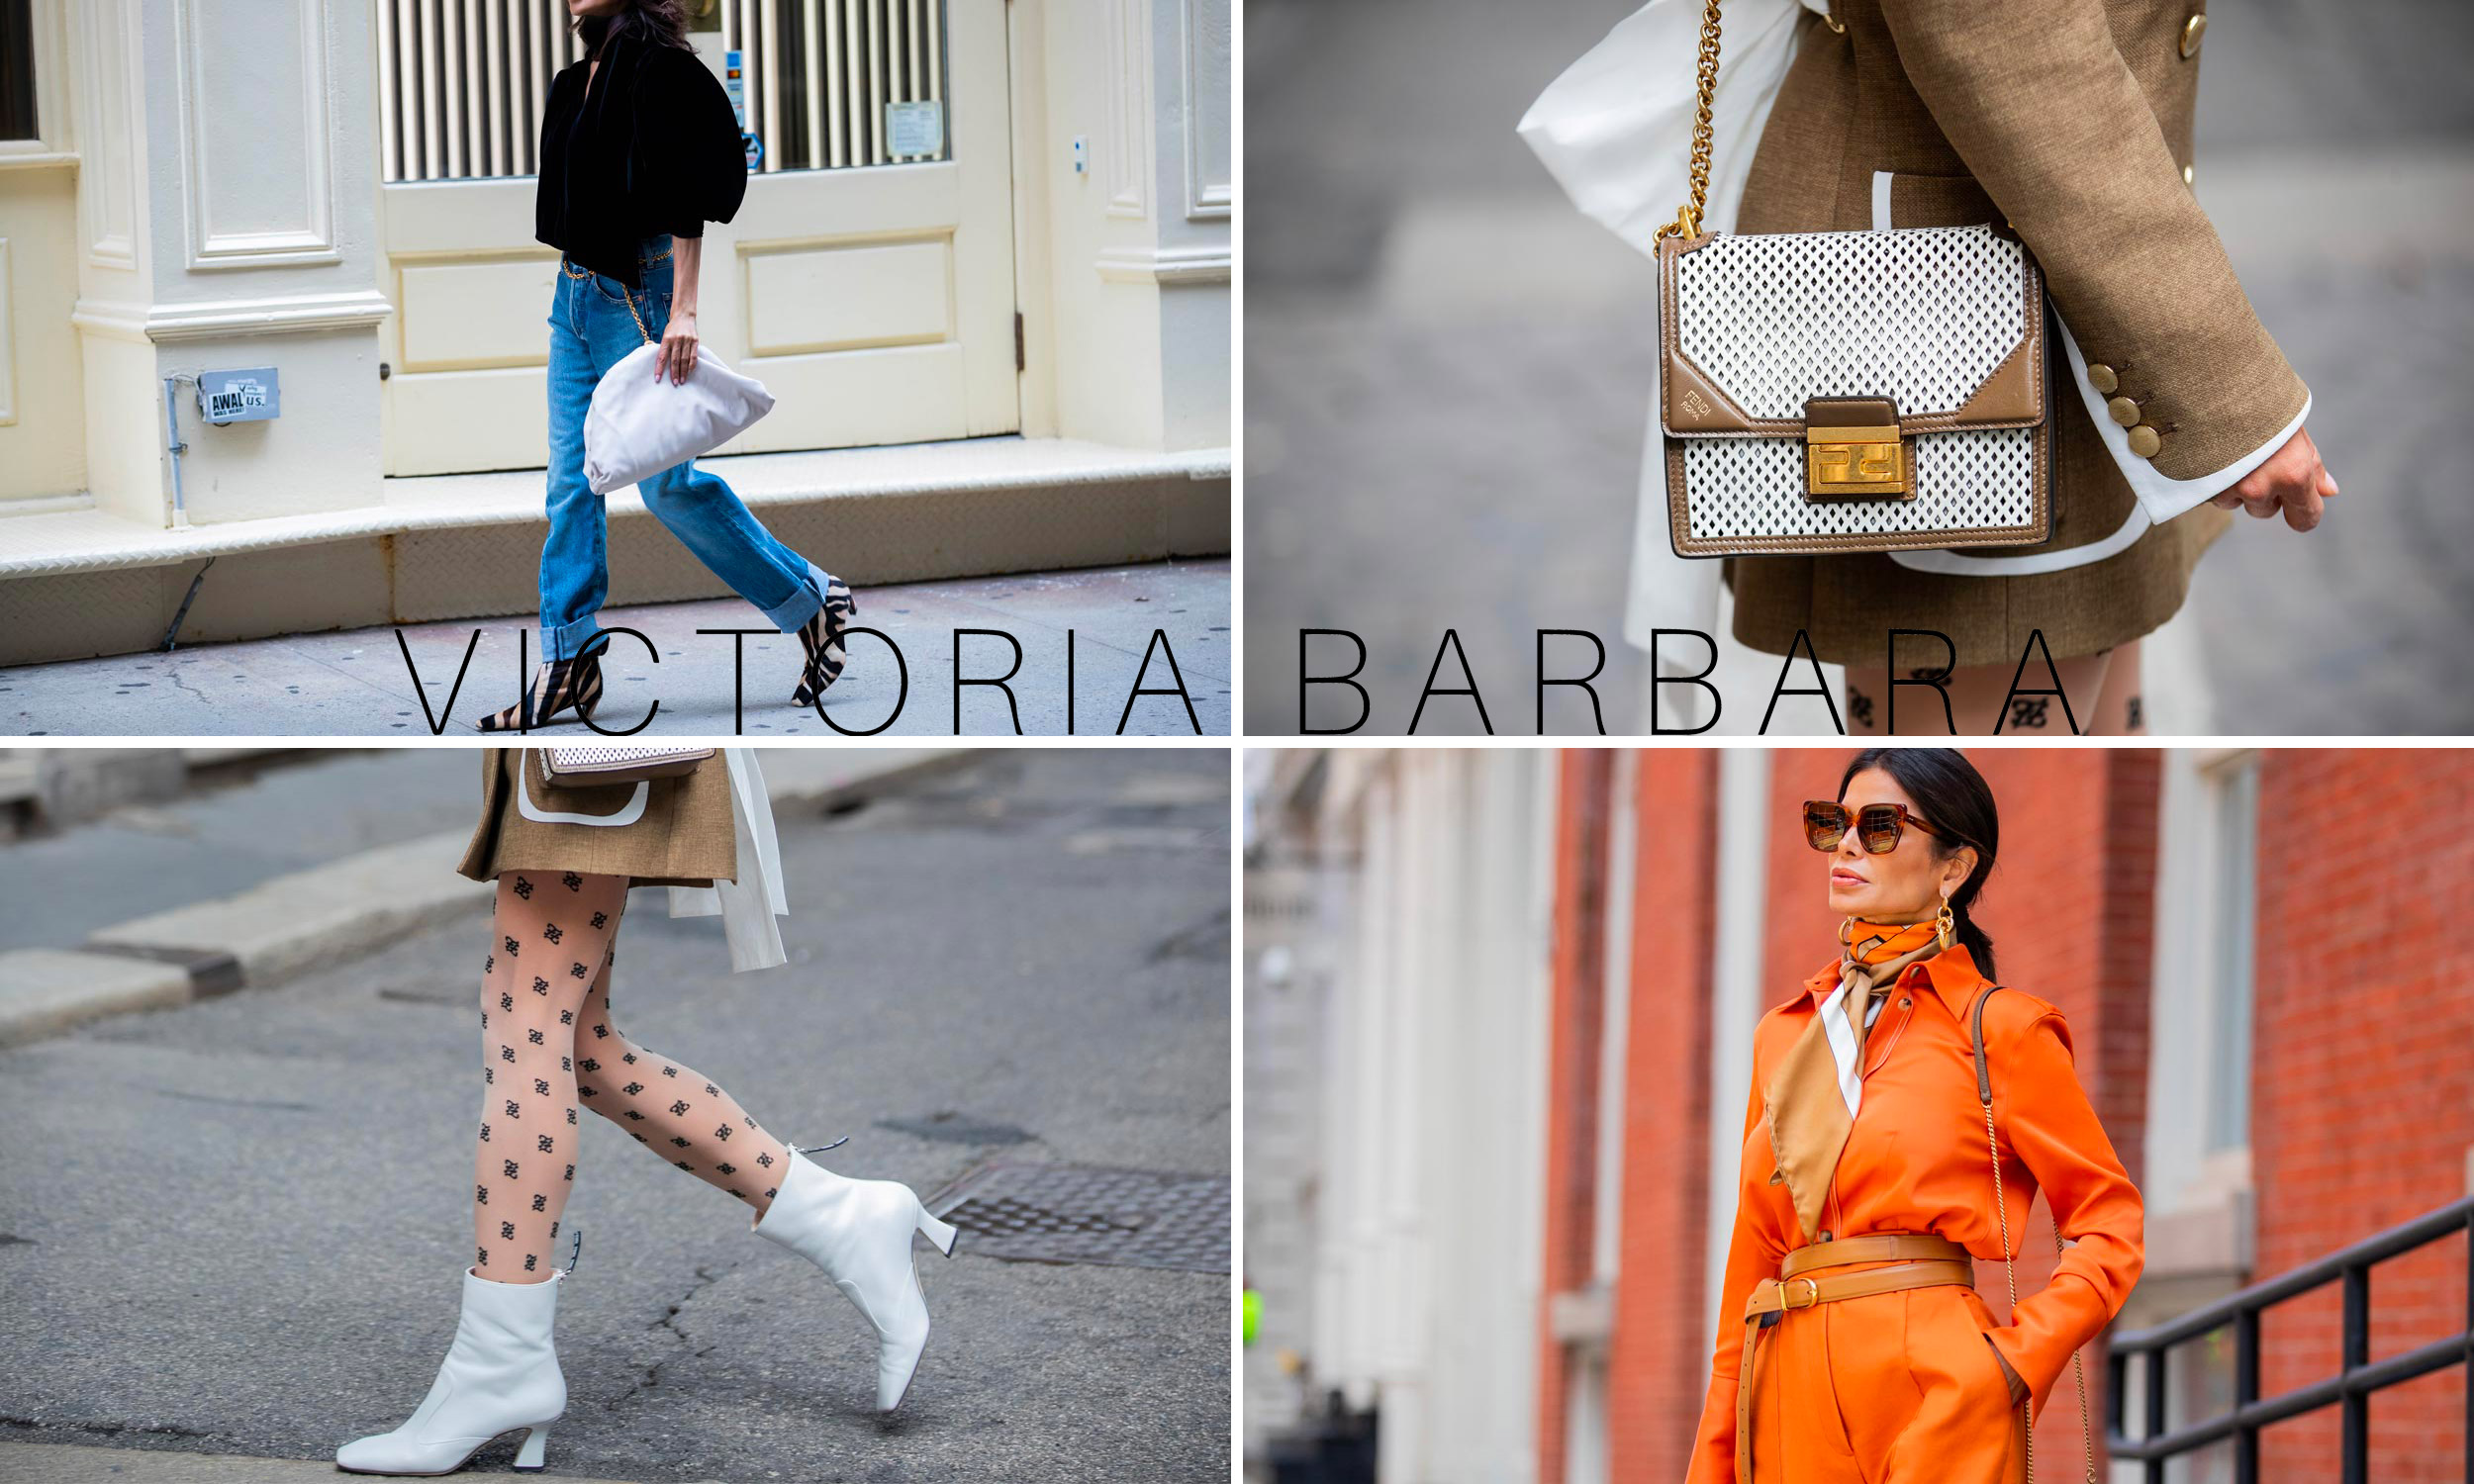 Victoria Barbara Fashion Influencer 